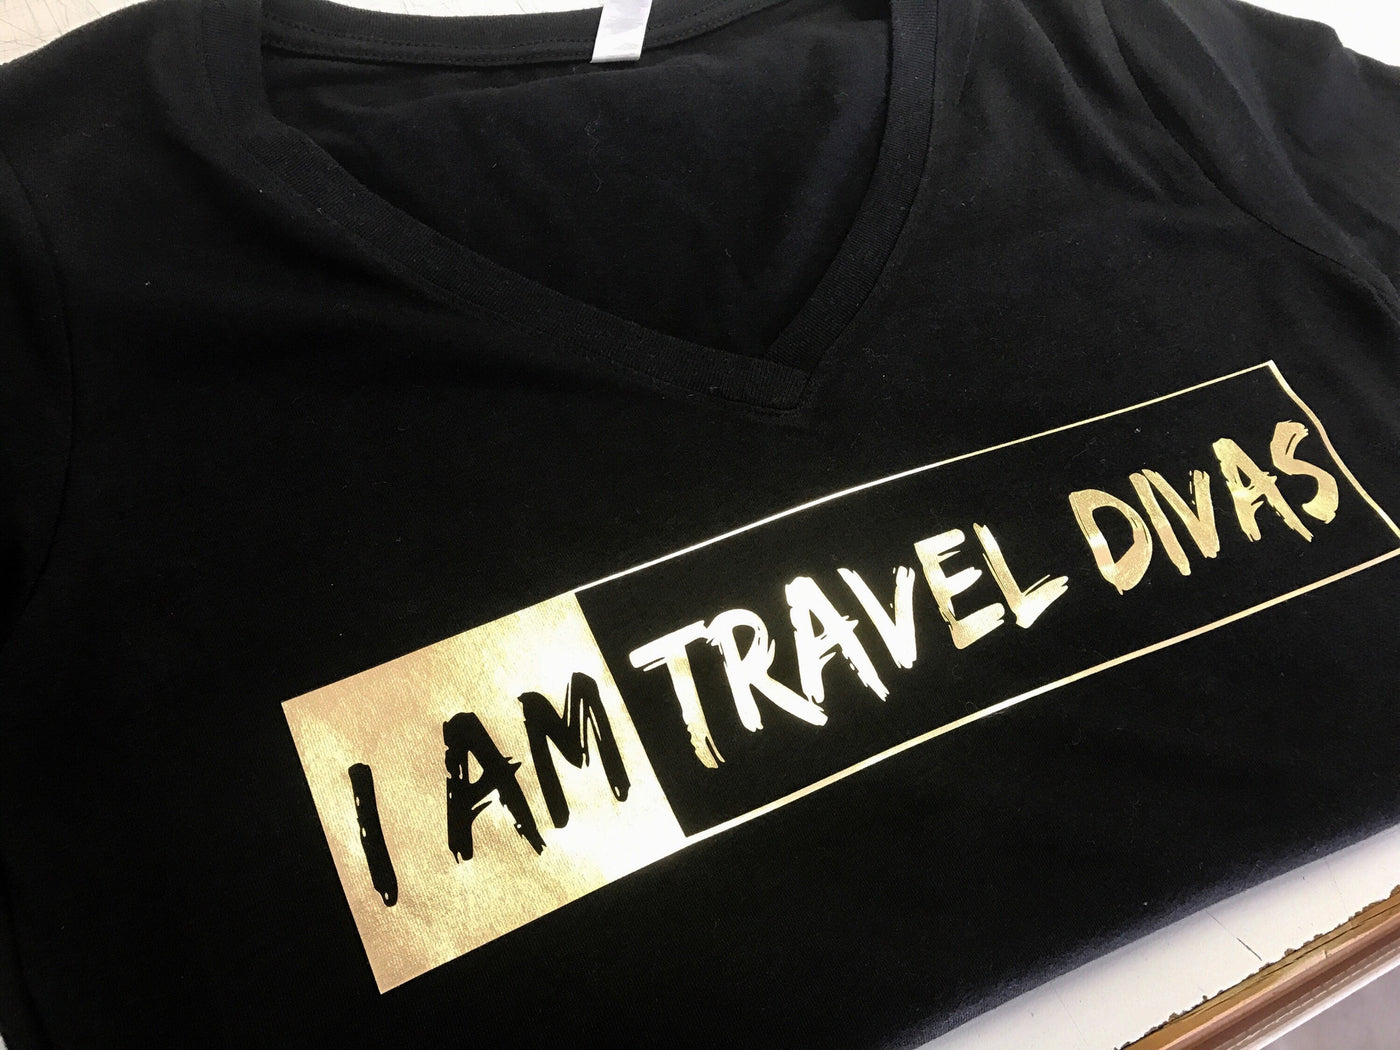 I AM Travel Divas Women's Shirt - Gold